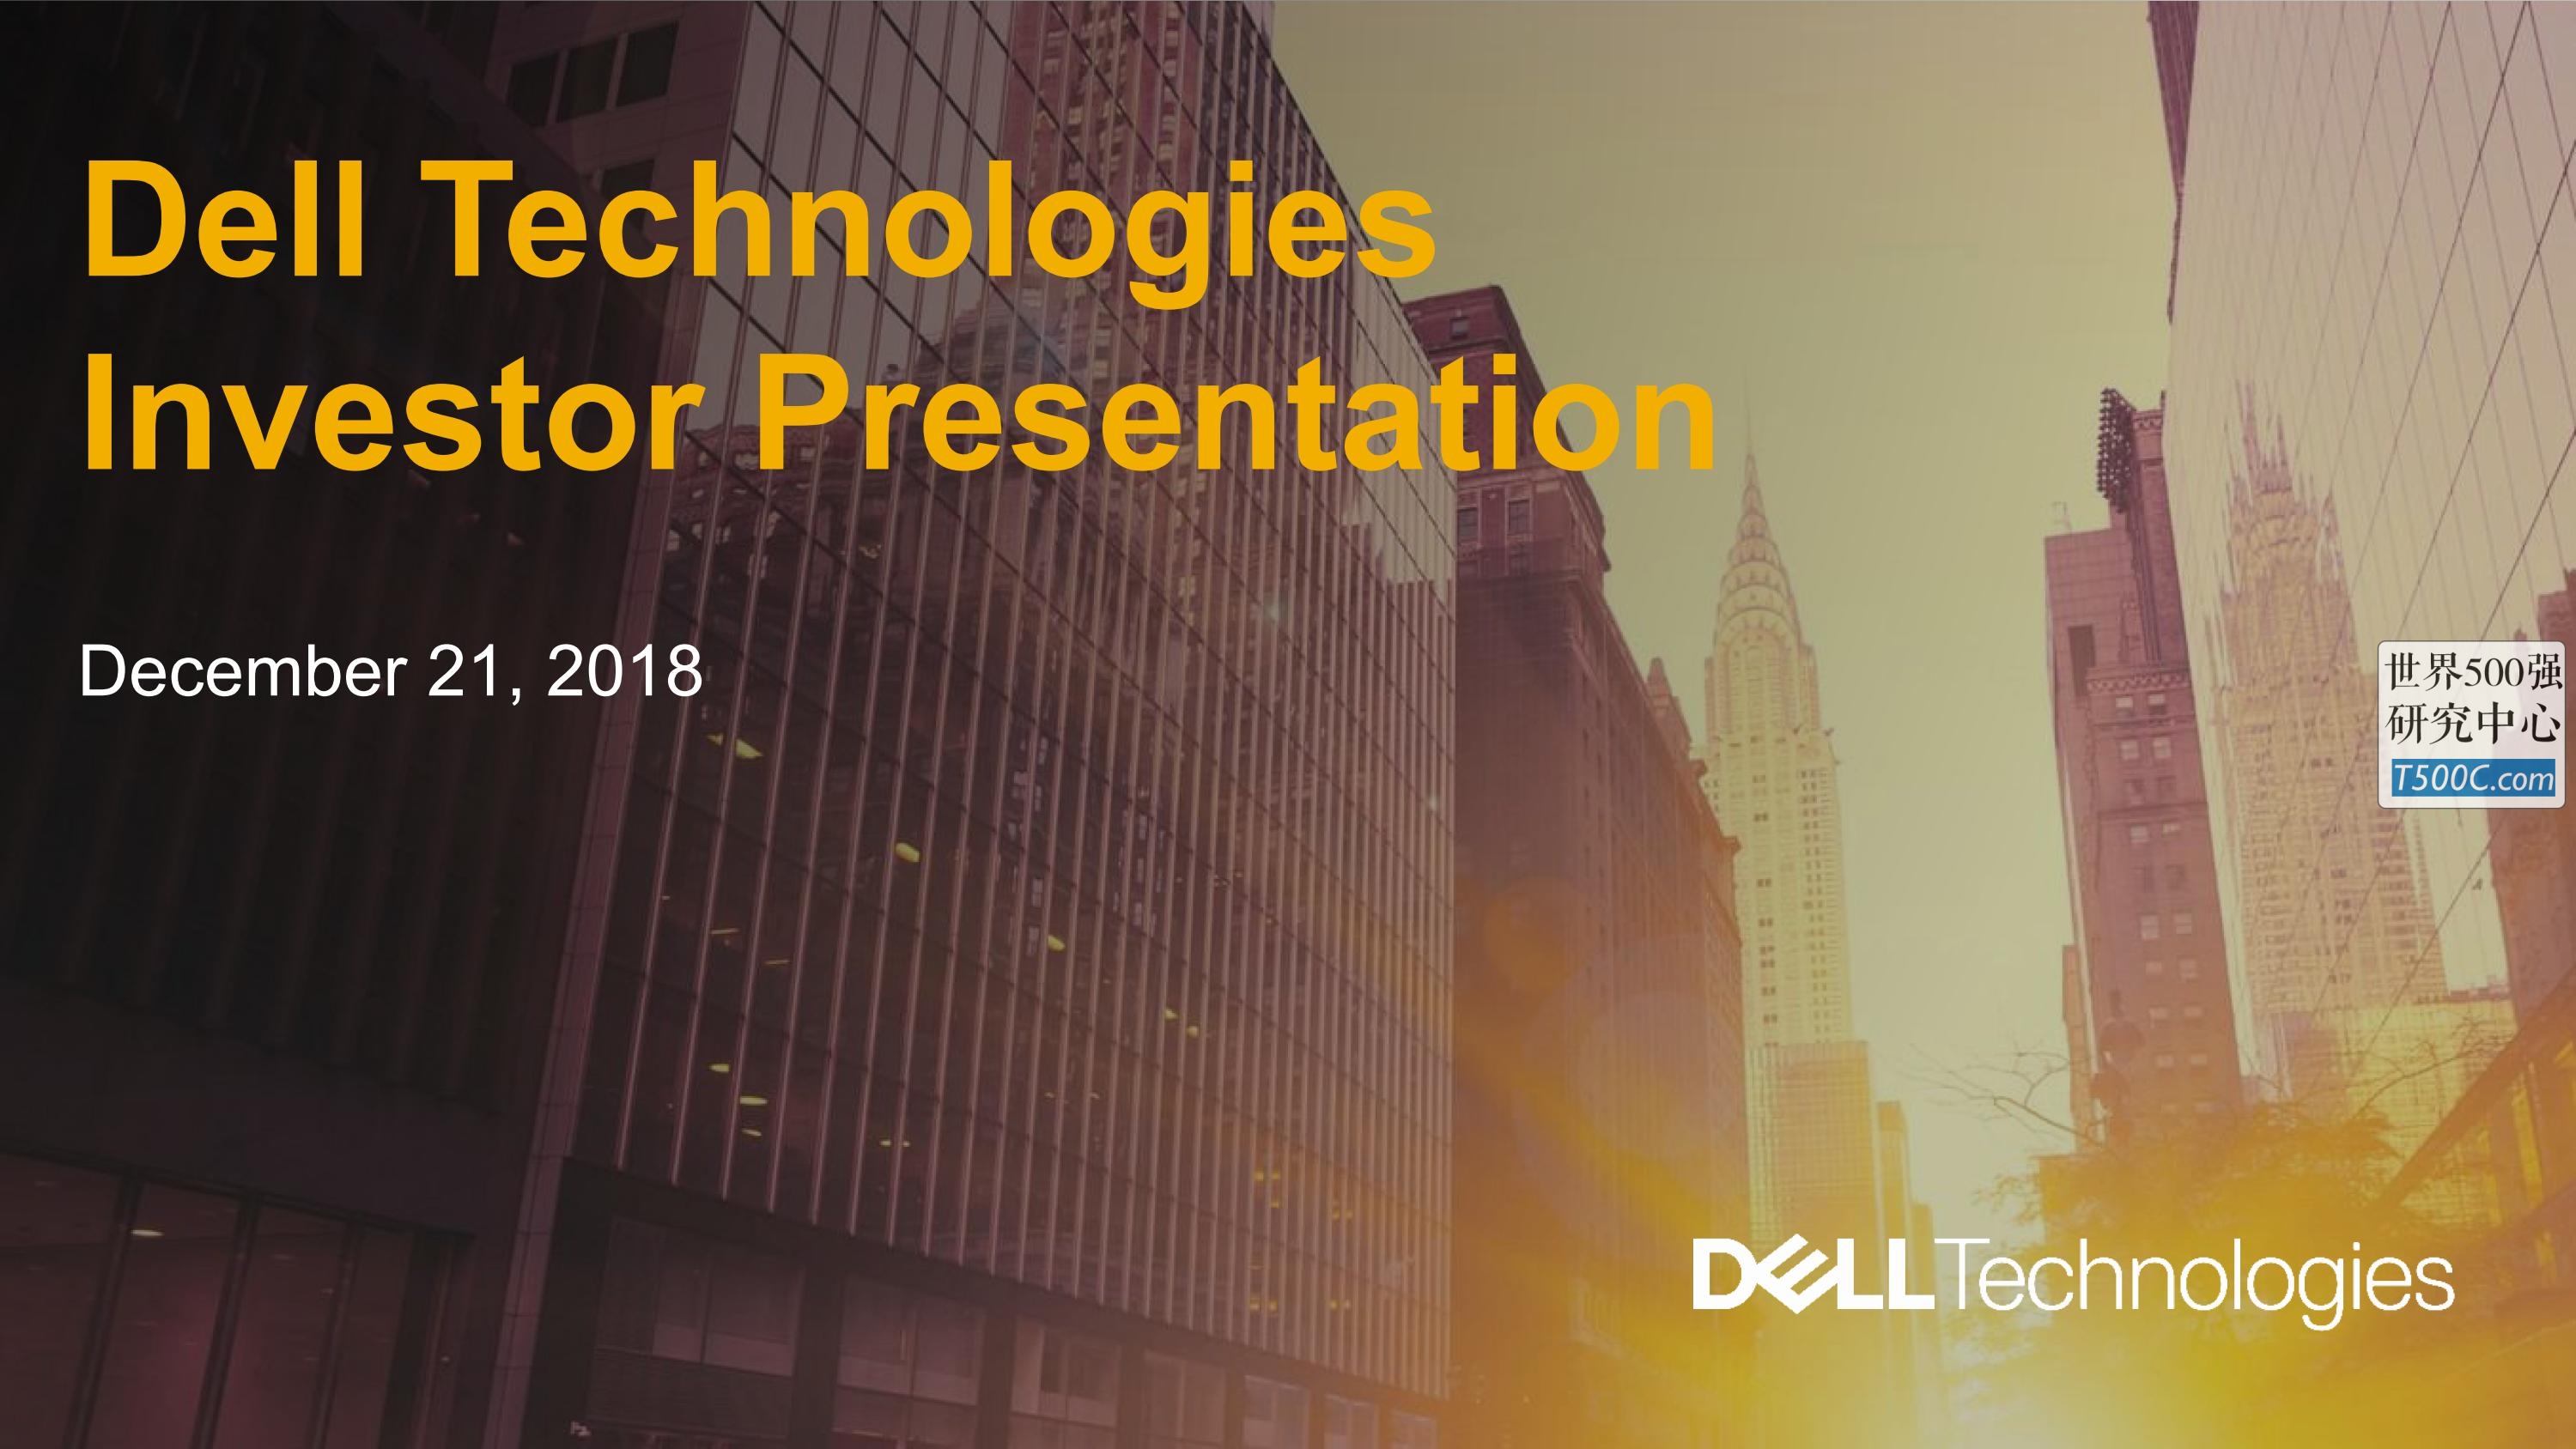 戴尔Dell_PPT样式_2018_T500C.com_Conference Call Presentation.pdf